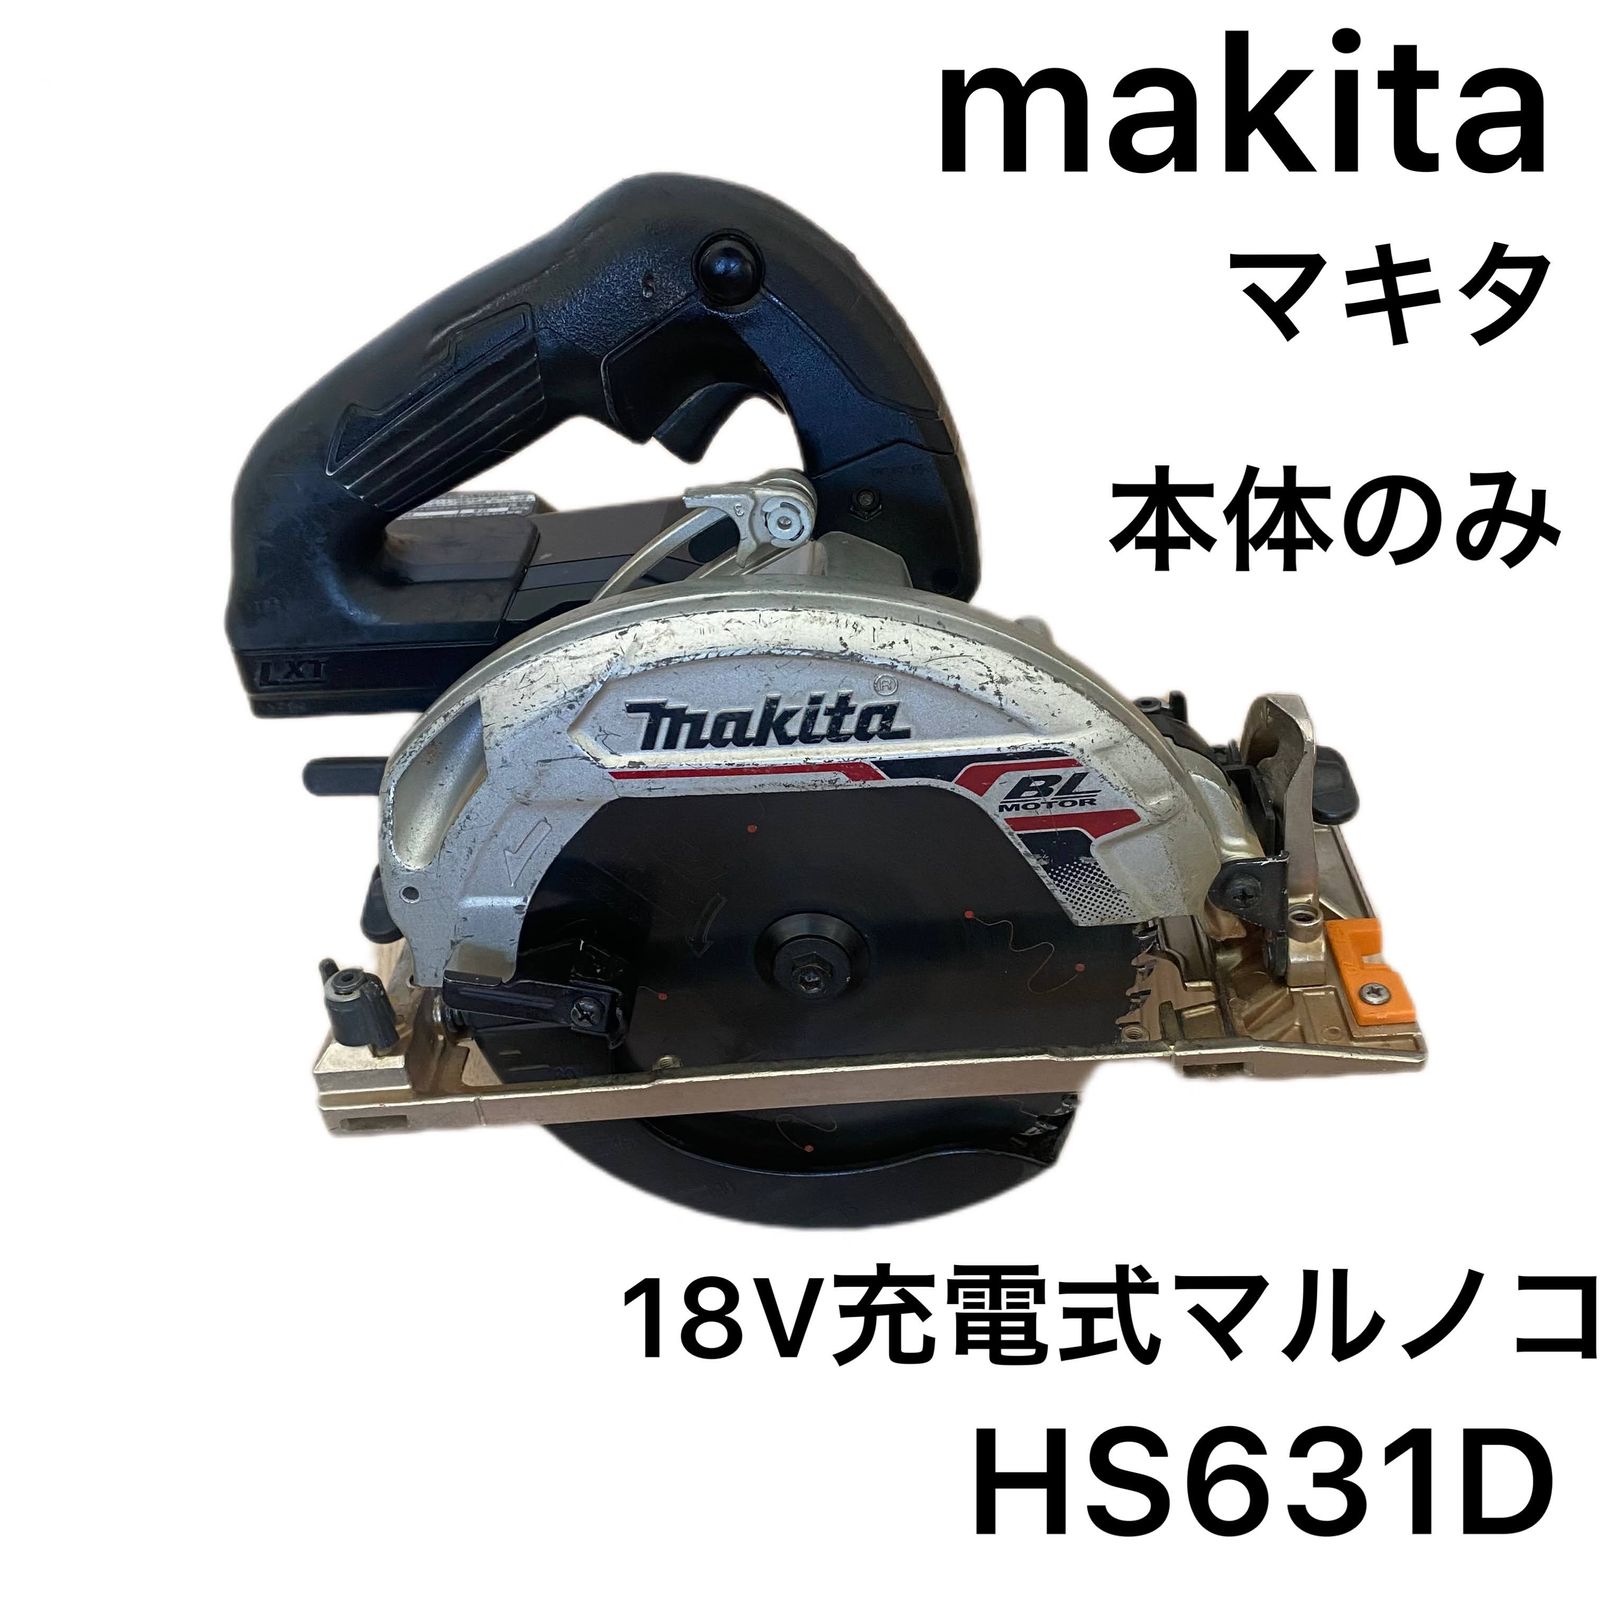 ☆正常動作中古品(訳あり品) Makita マキタ 18V HS631D 充電式丸ノコ